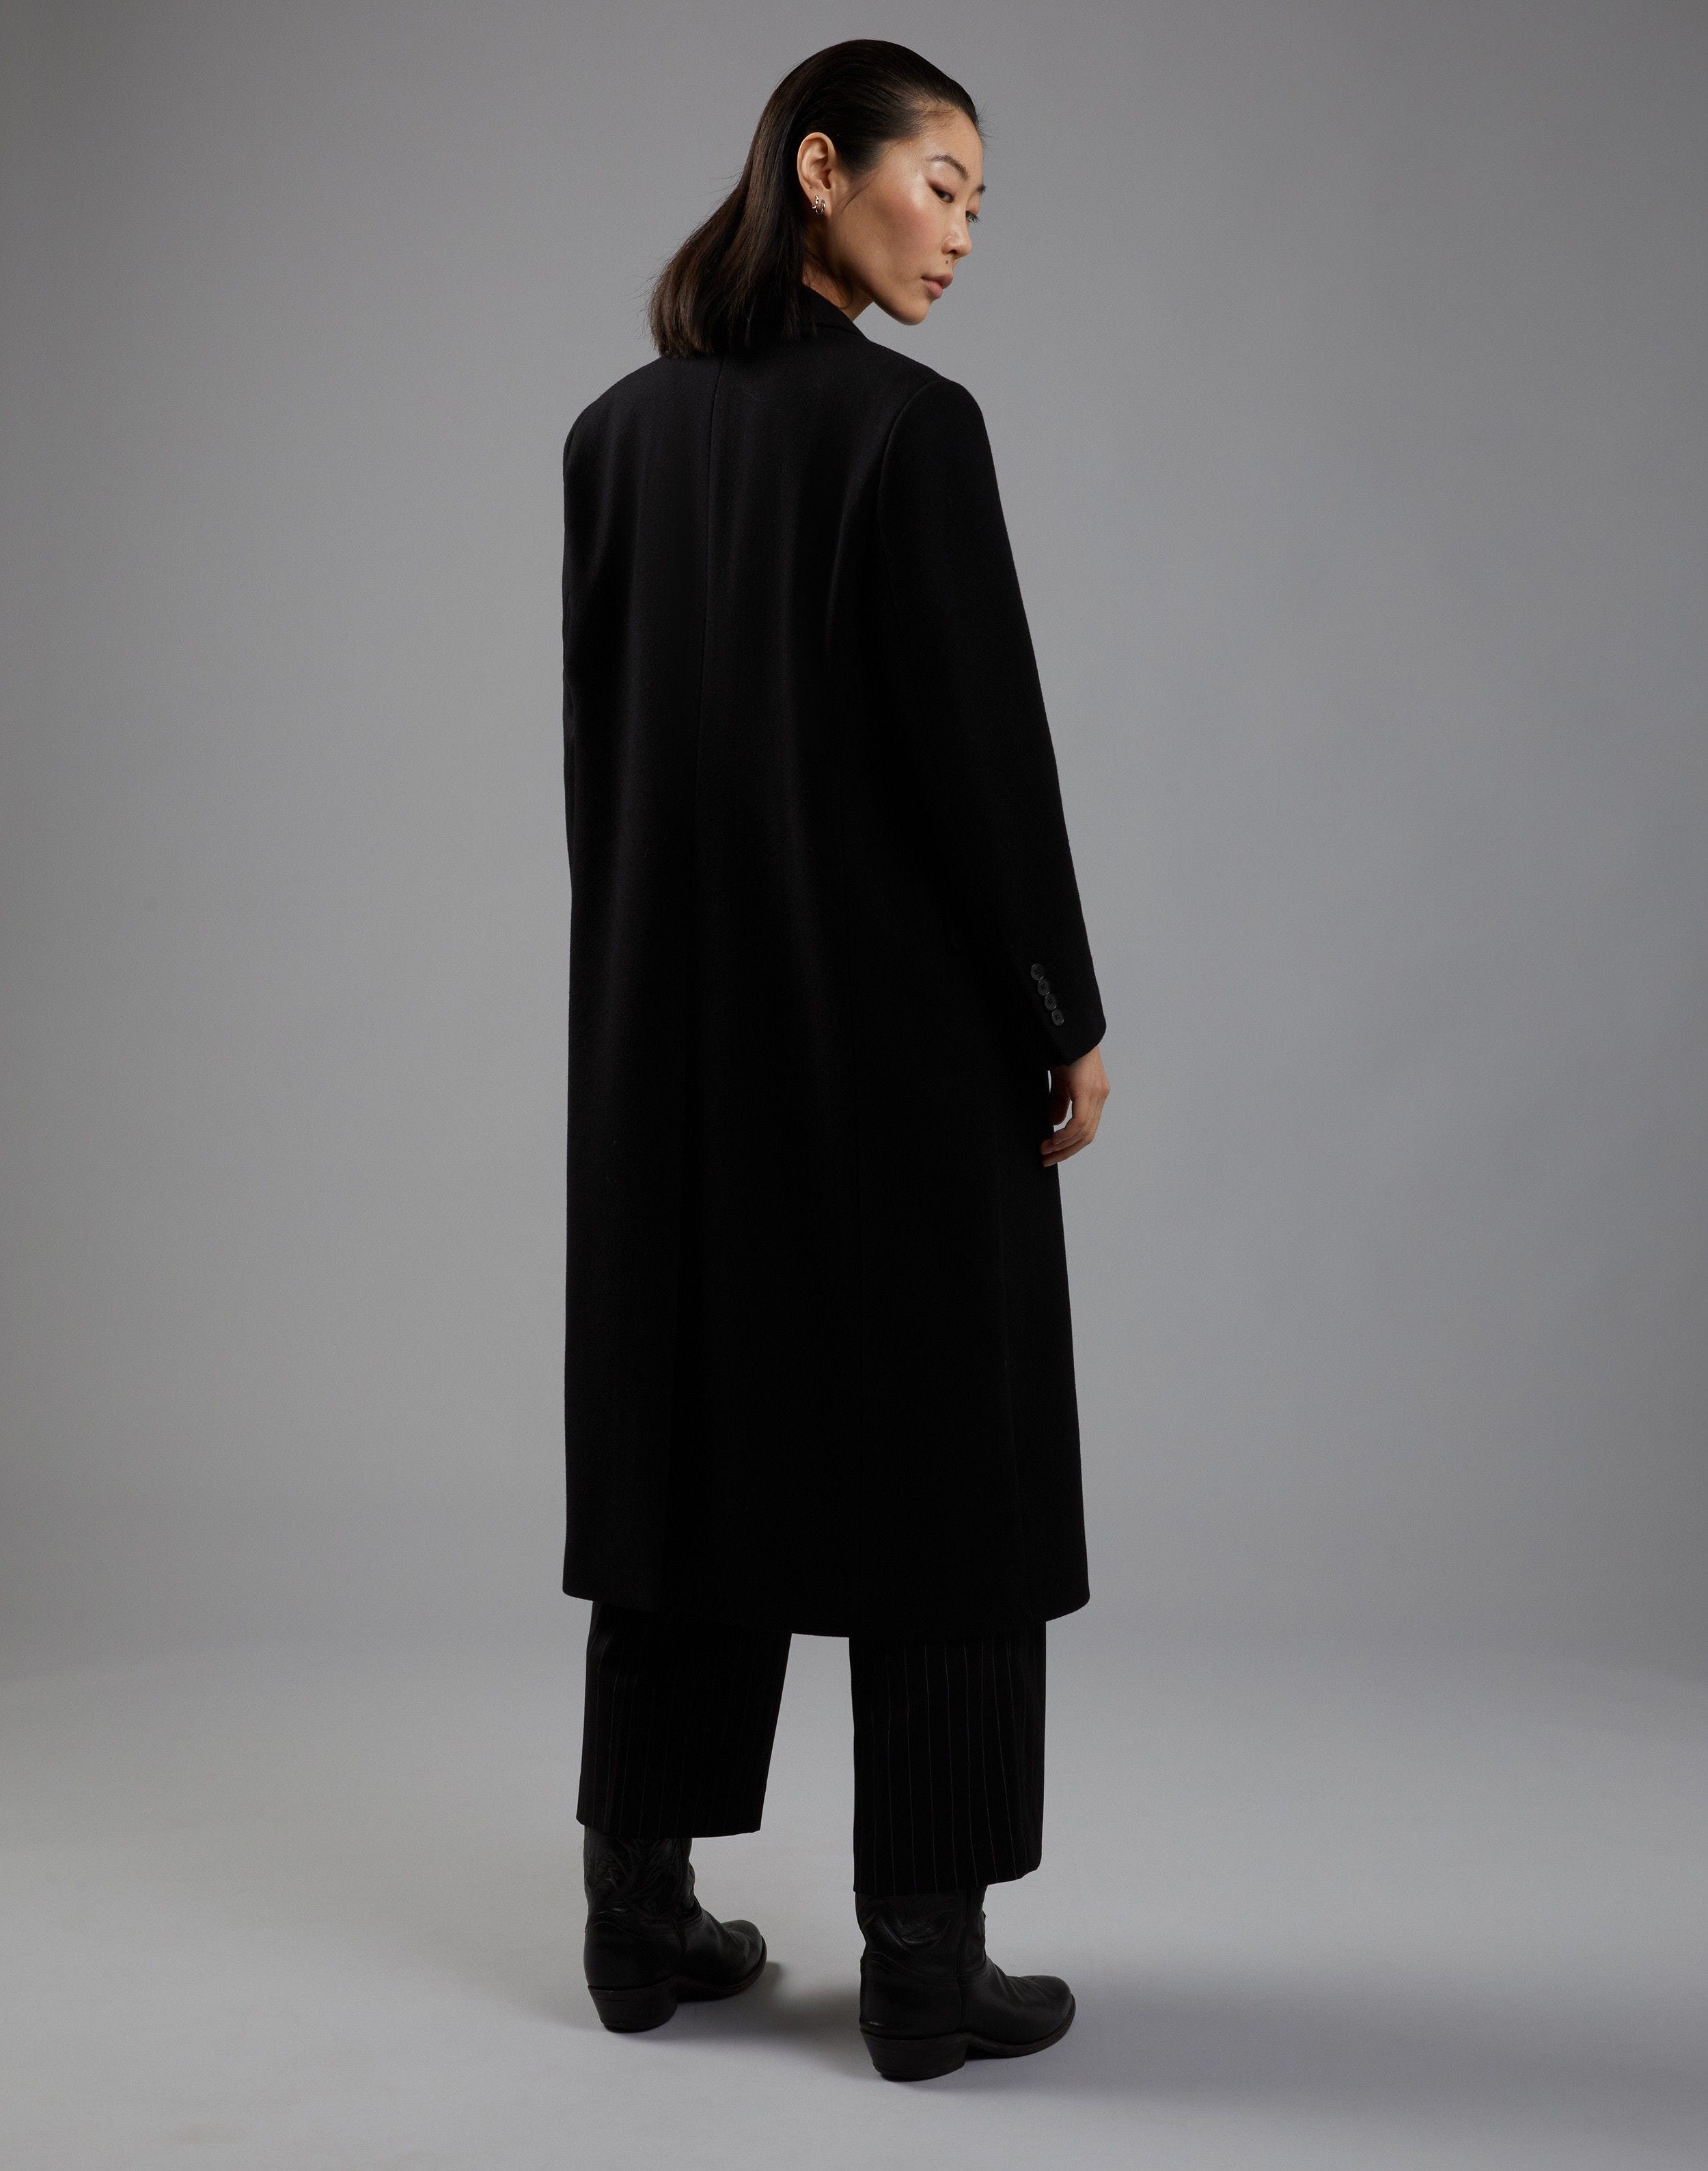 Cappotto nero doppiopetto in panno lana